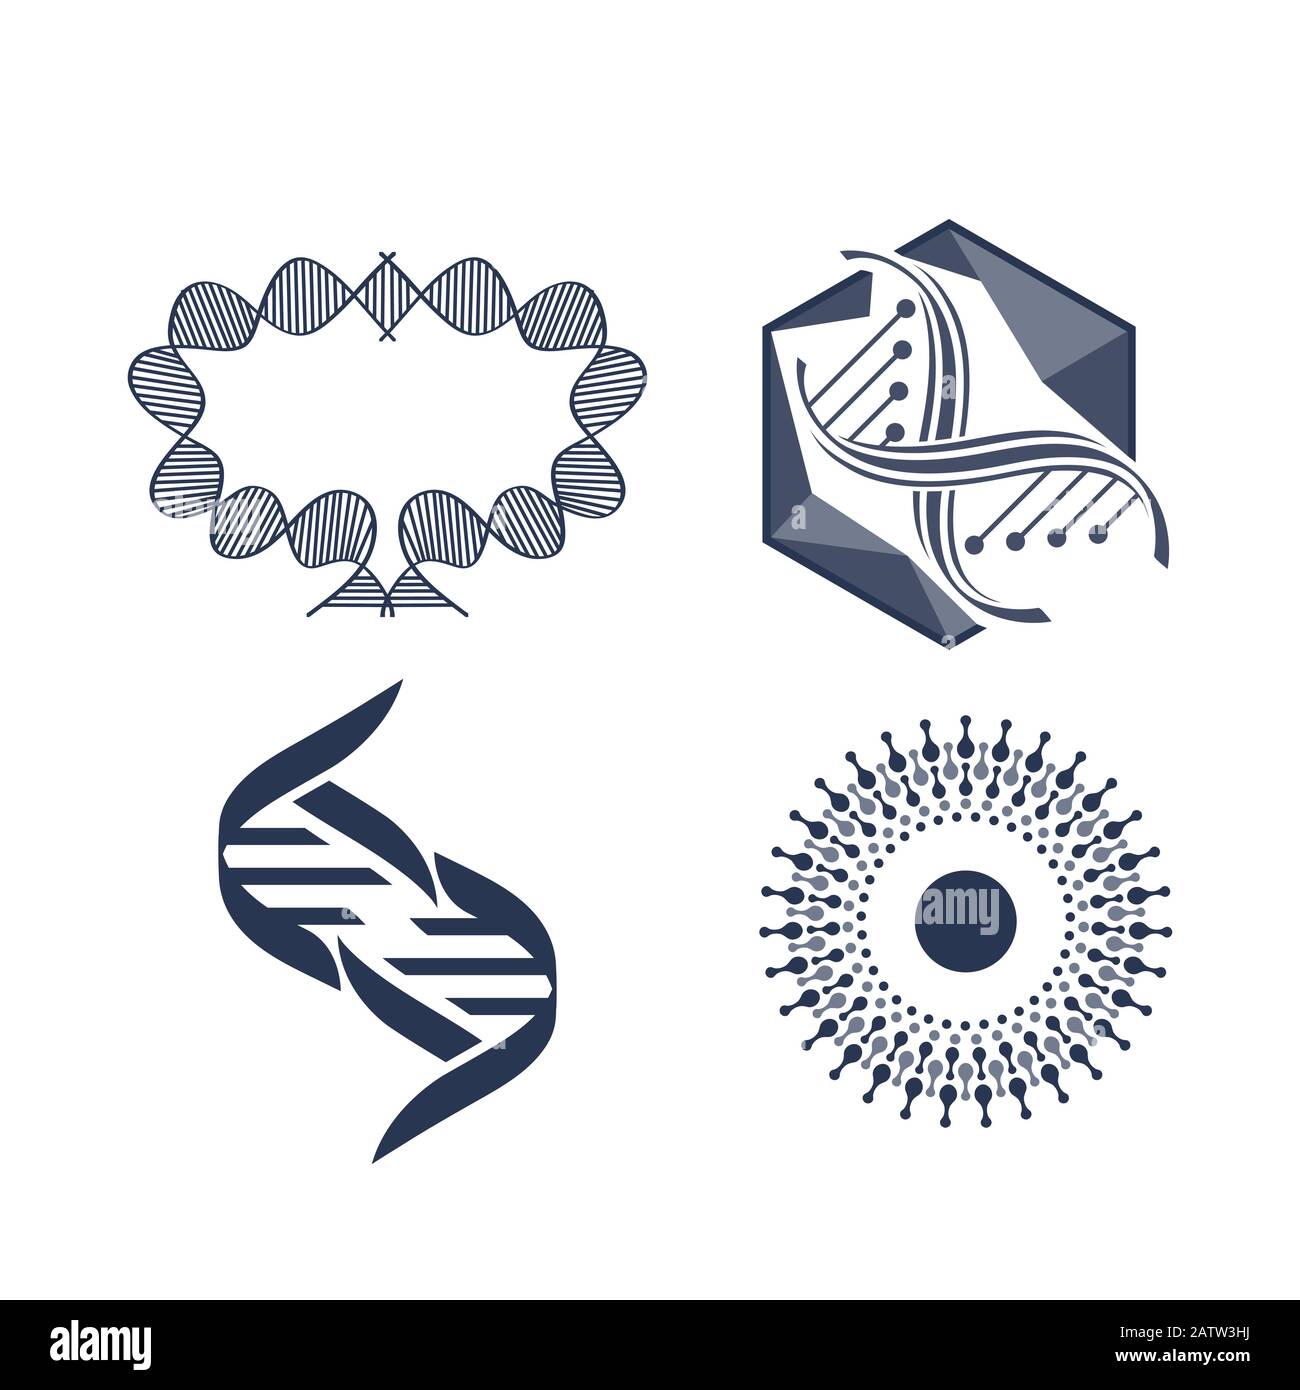 Badge de molécule hexagonale. Logo de structure moléculaire, grilles moléculaires et modèles de molécules hexagonales de chimie. ADN macromolécule, journal de biocode scientifique Illustration de Vecteur